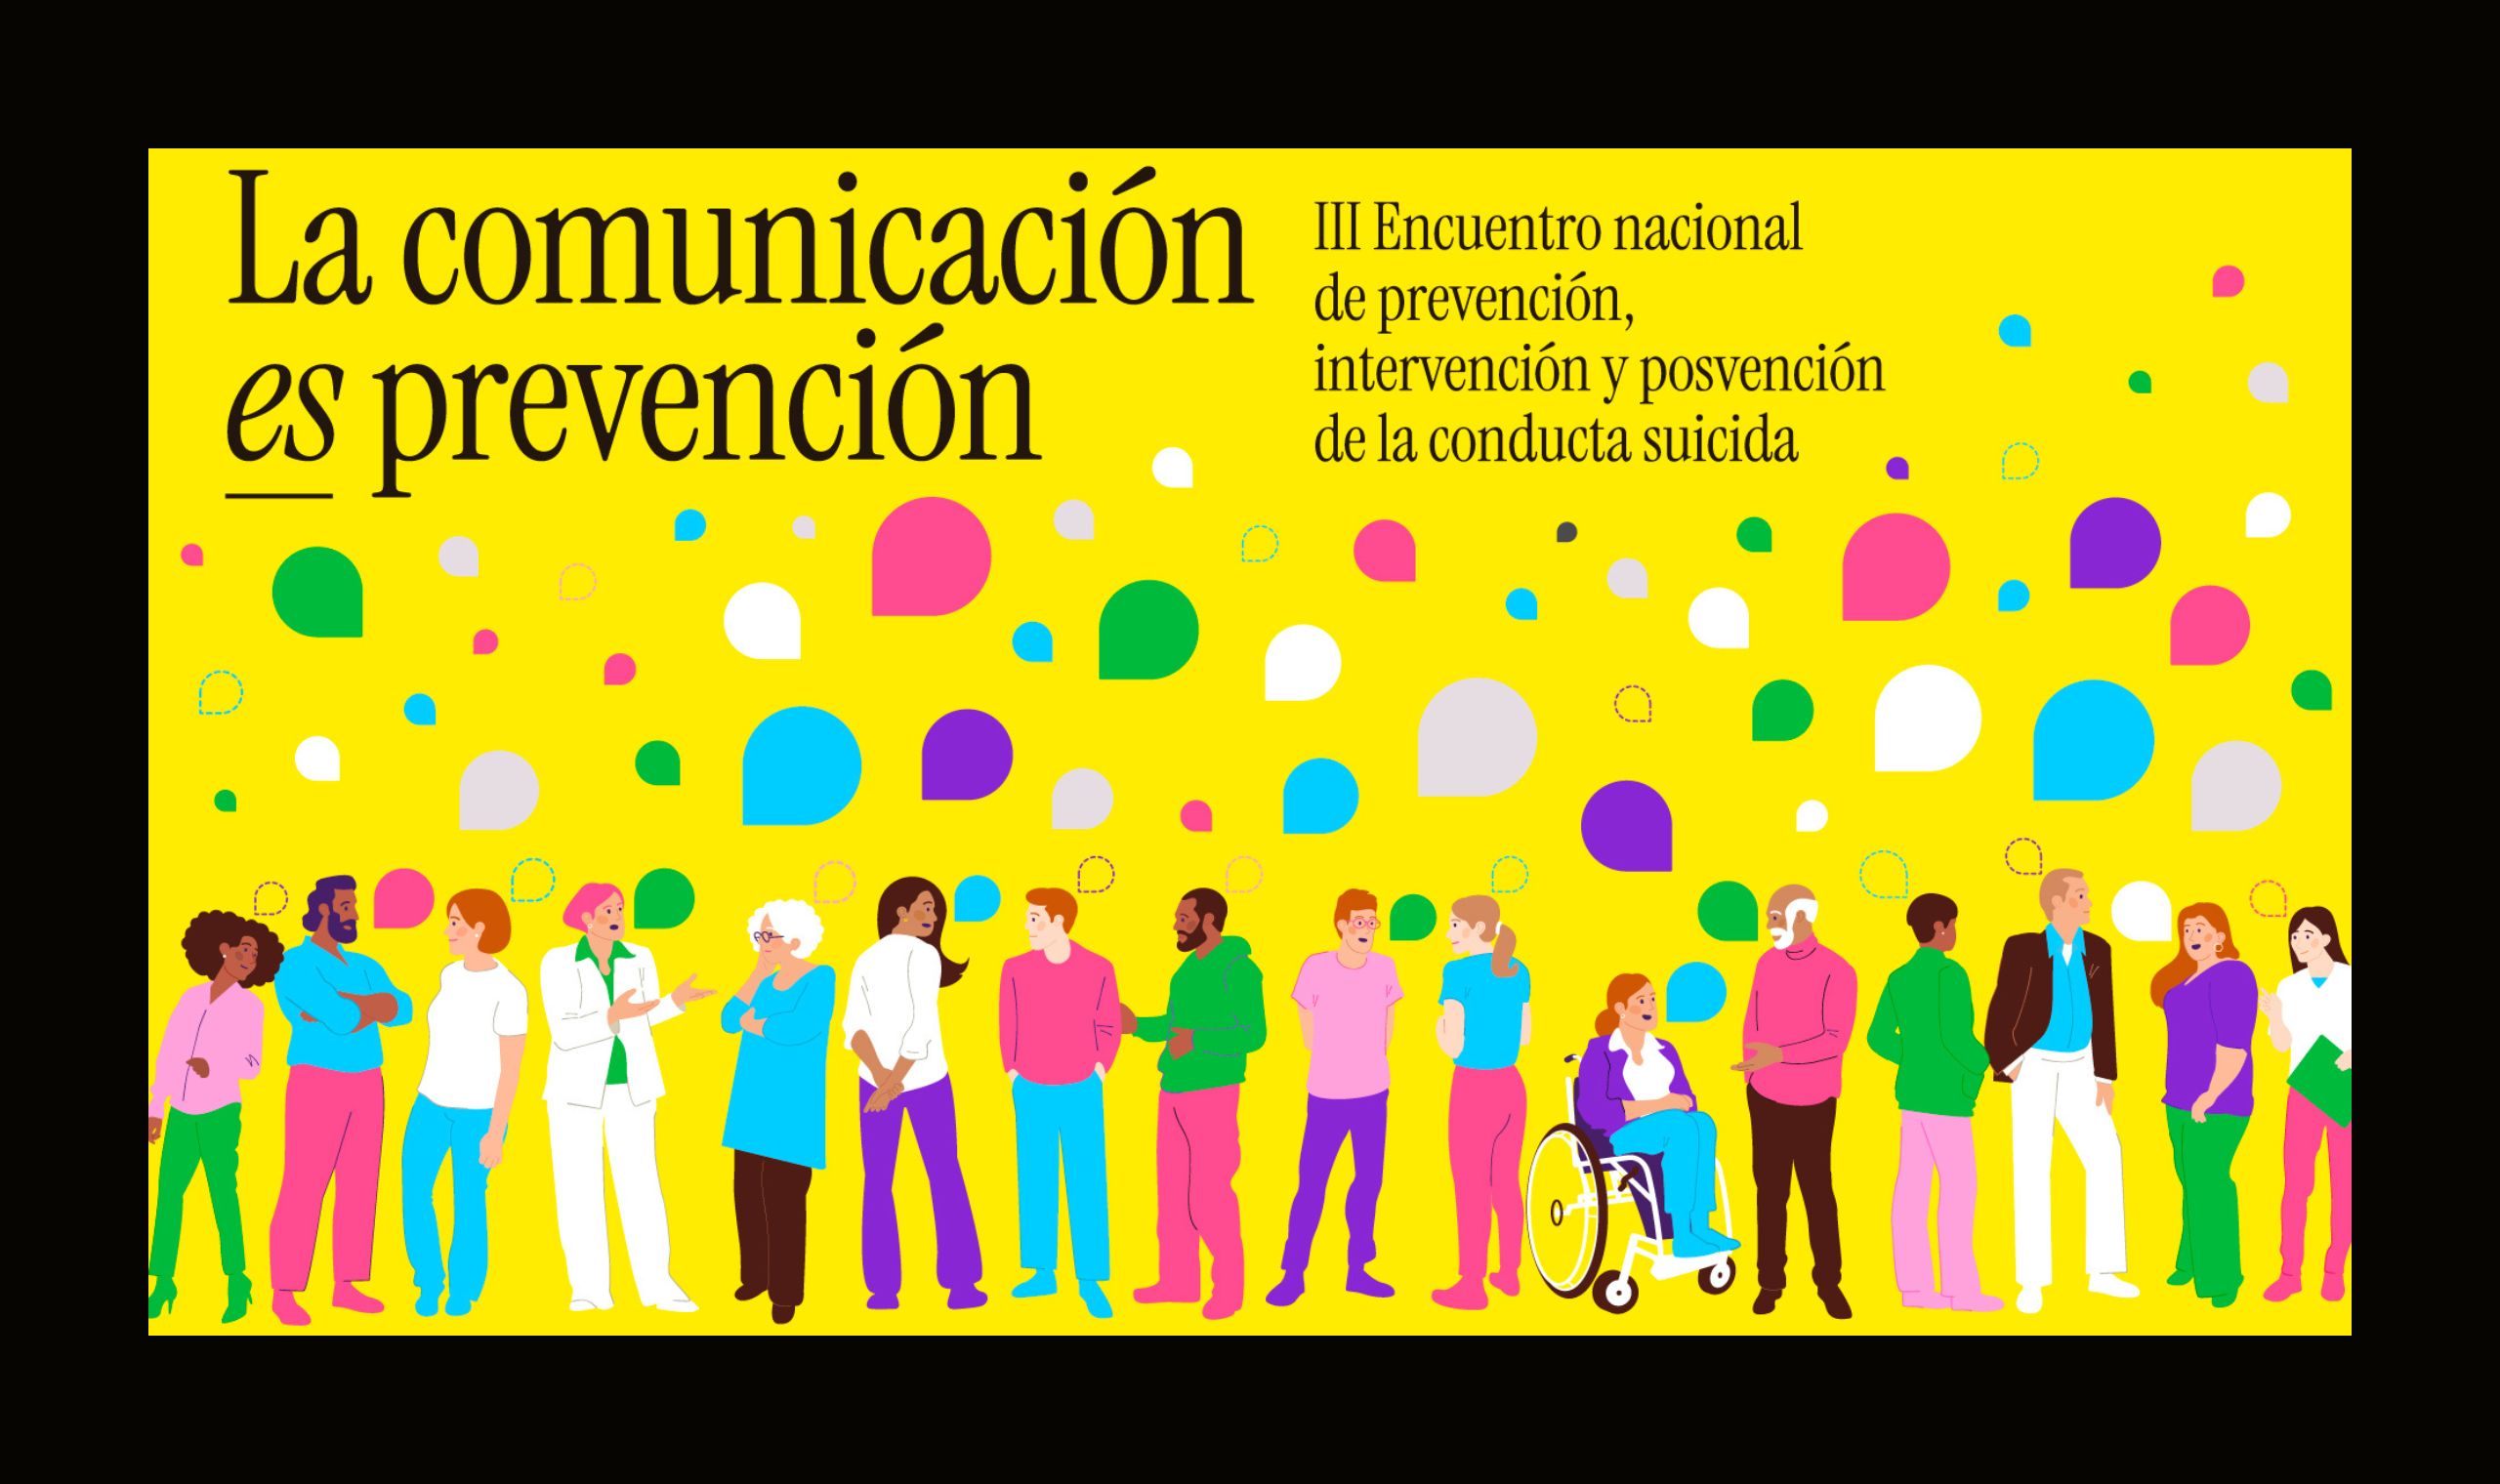 La comunicación es prevención